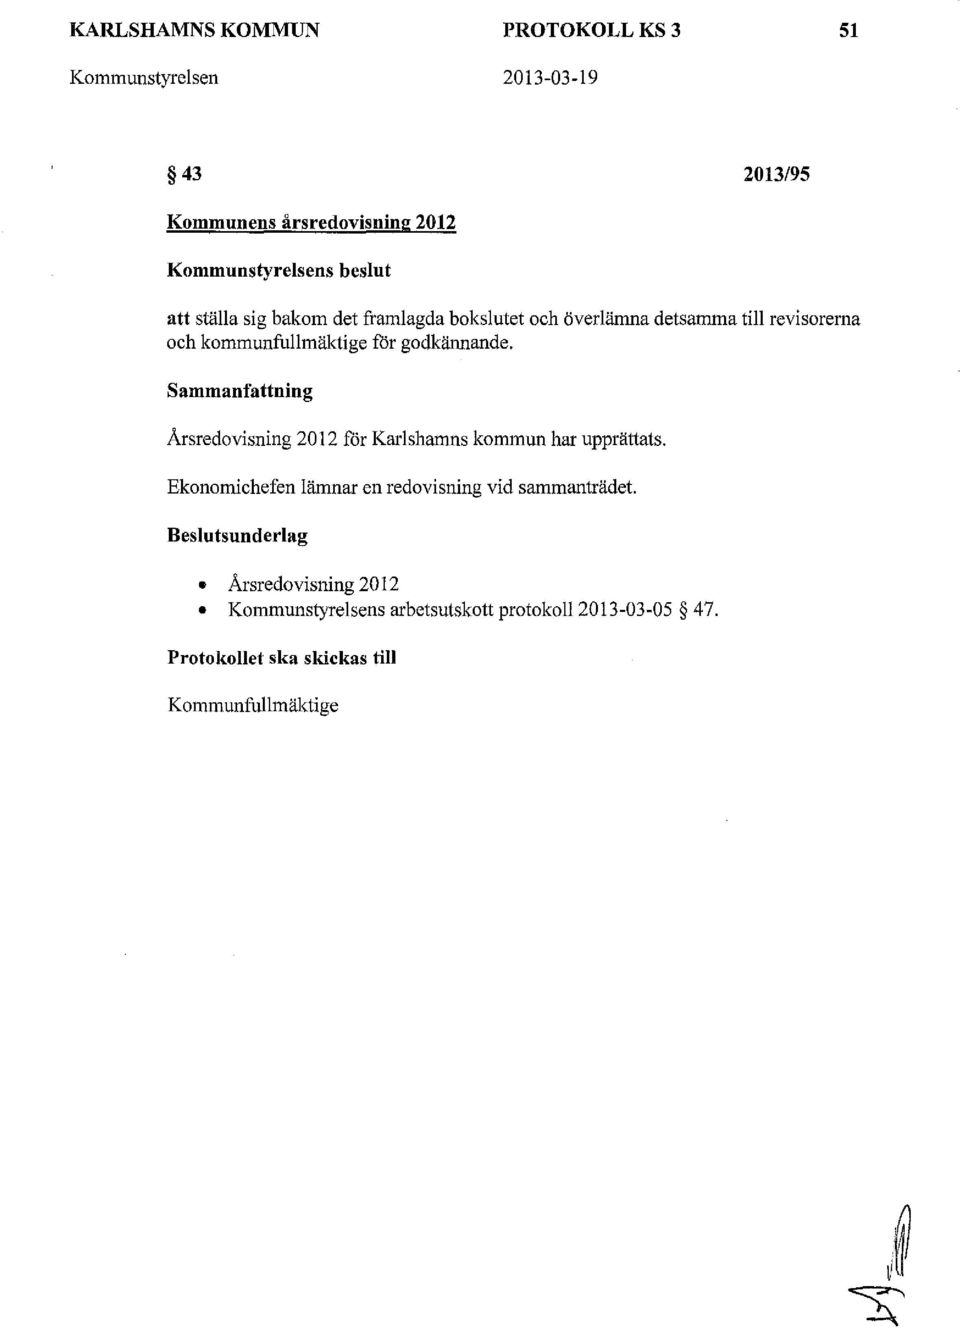 Sammanfattning Årsredovisning 2012 får Karlshamns kommun har upprättats. Ekonomichefen lämnar en redovisning vid sammanträdet.